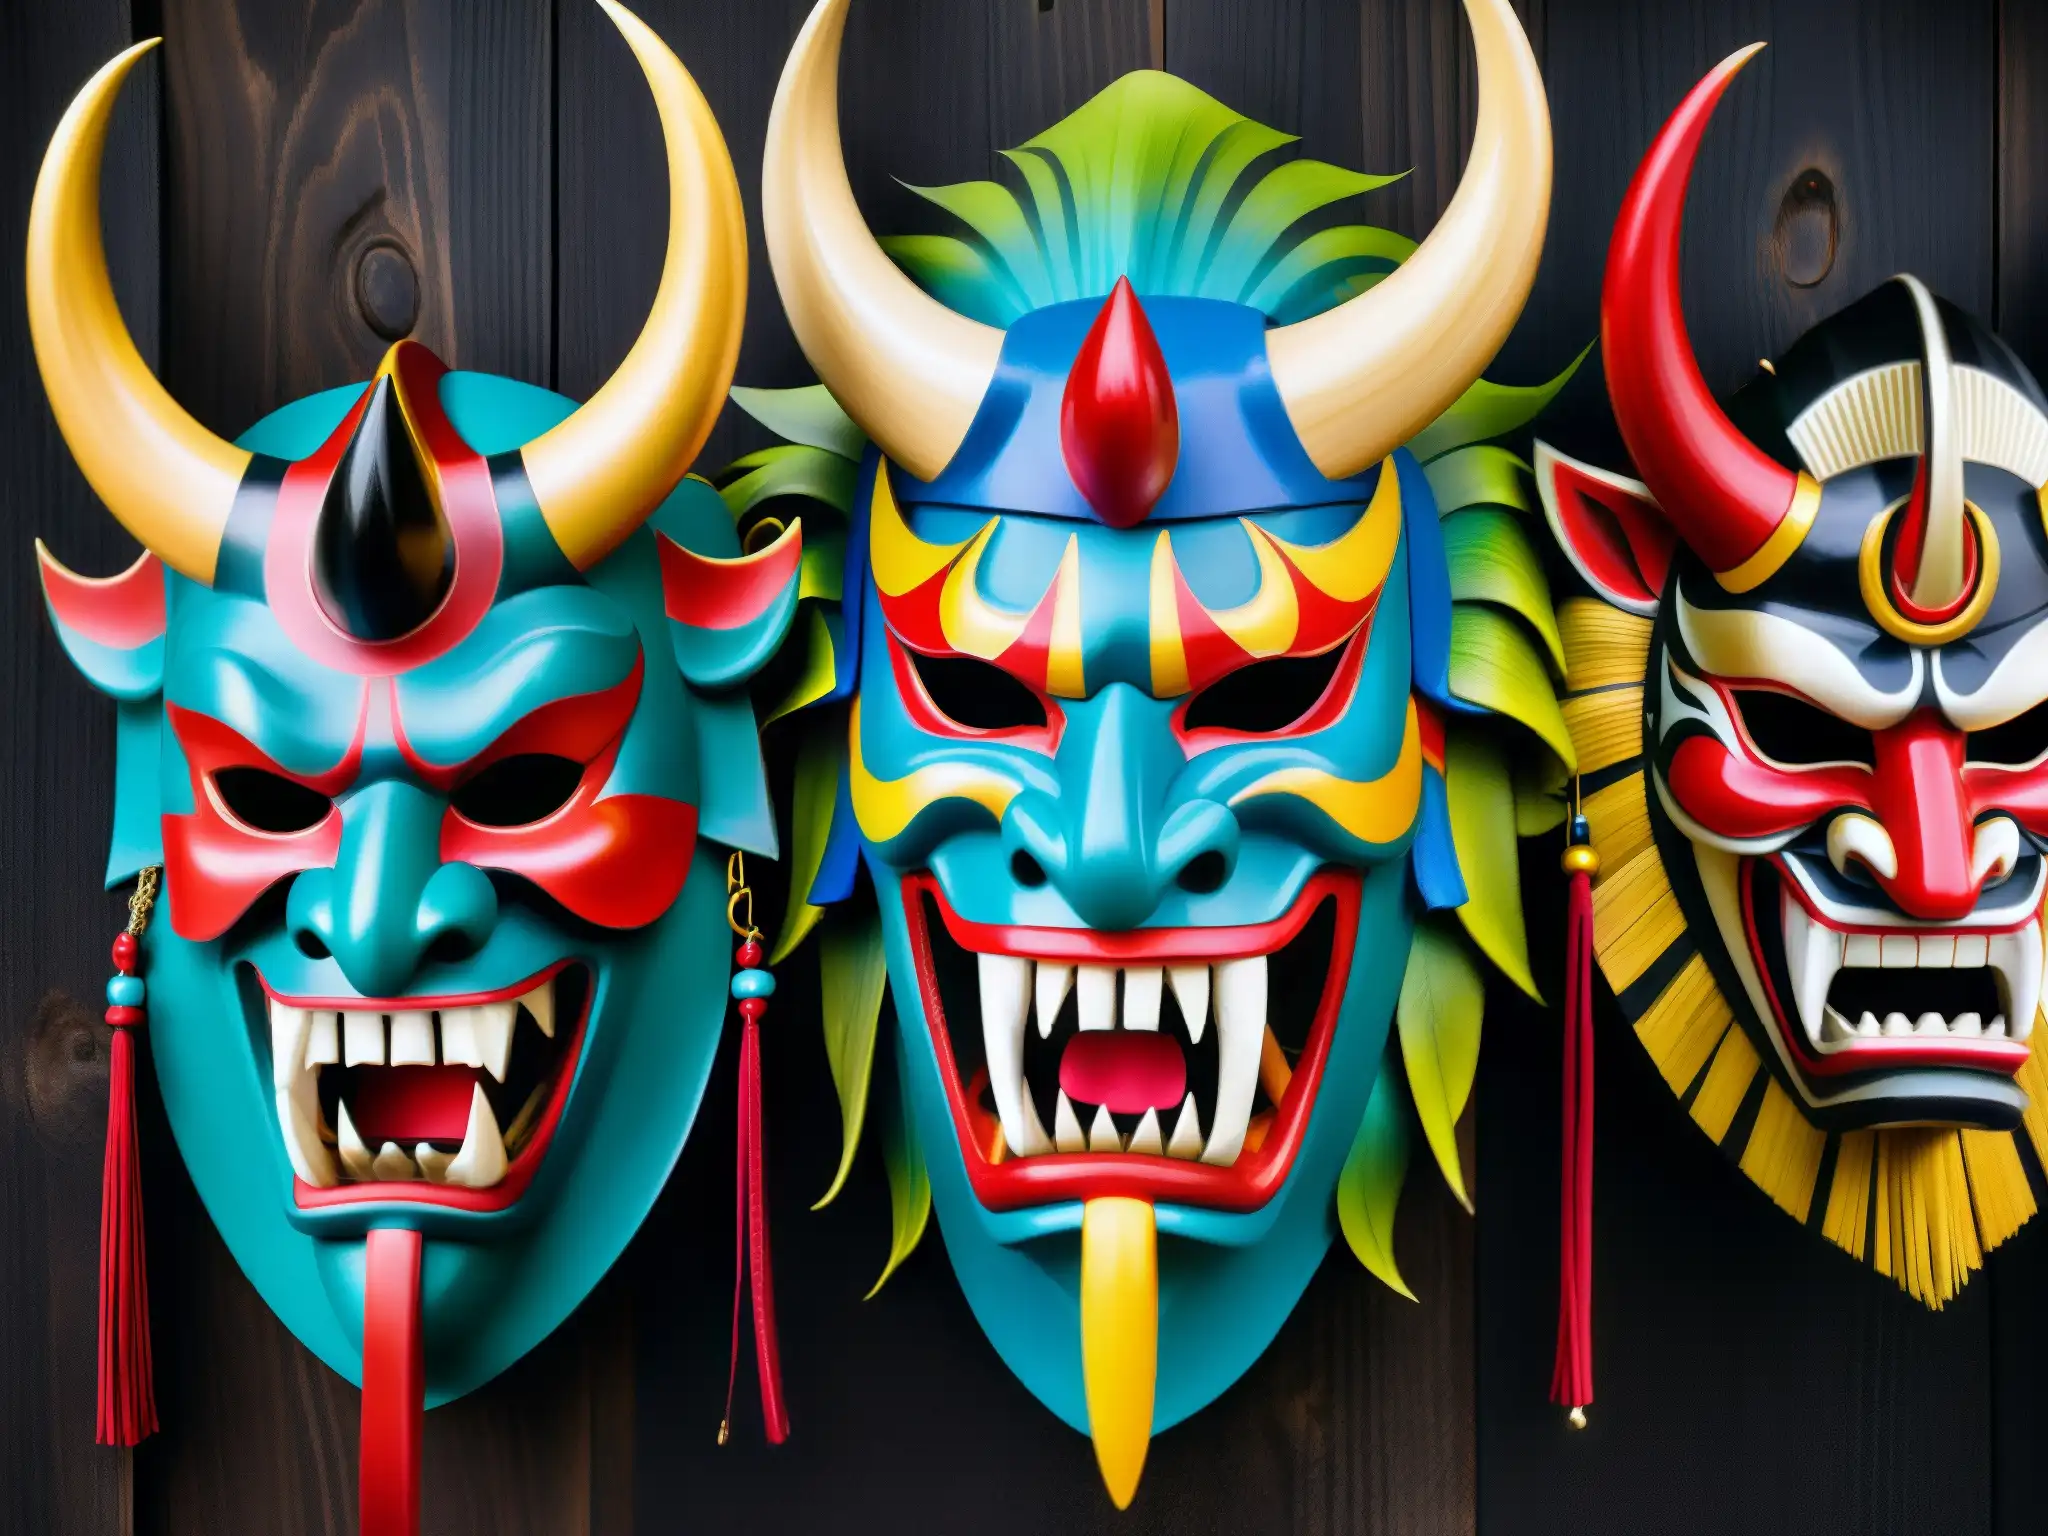 Detalle vibrante de máscaras de demonios Namahage, expresiones amenazadoras y colores intensos en fondo oscuro, evocando la leyenda de los Namahage demonios Año Nuevo